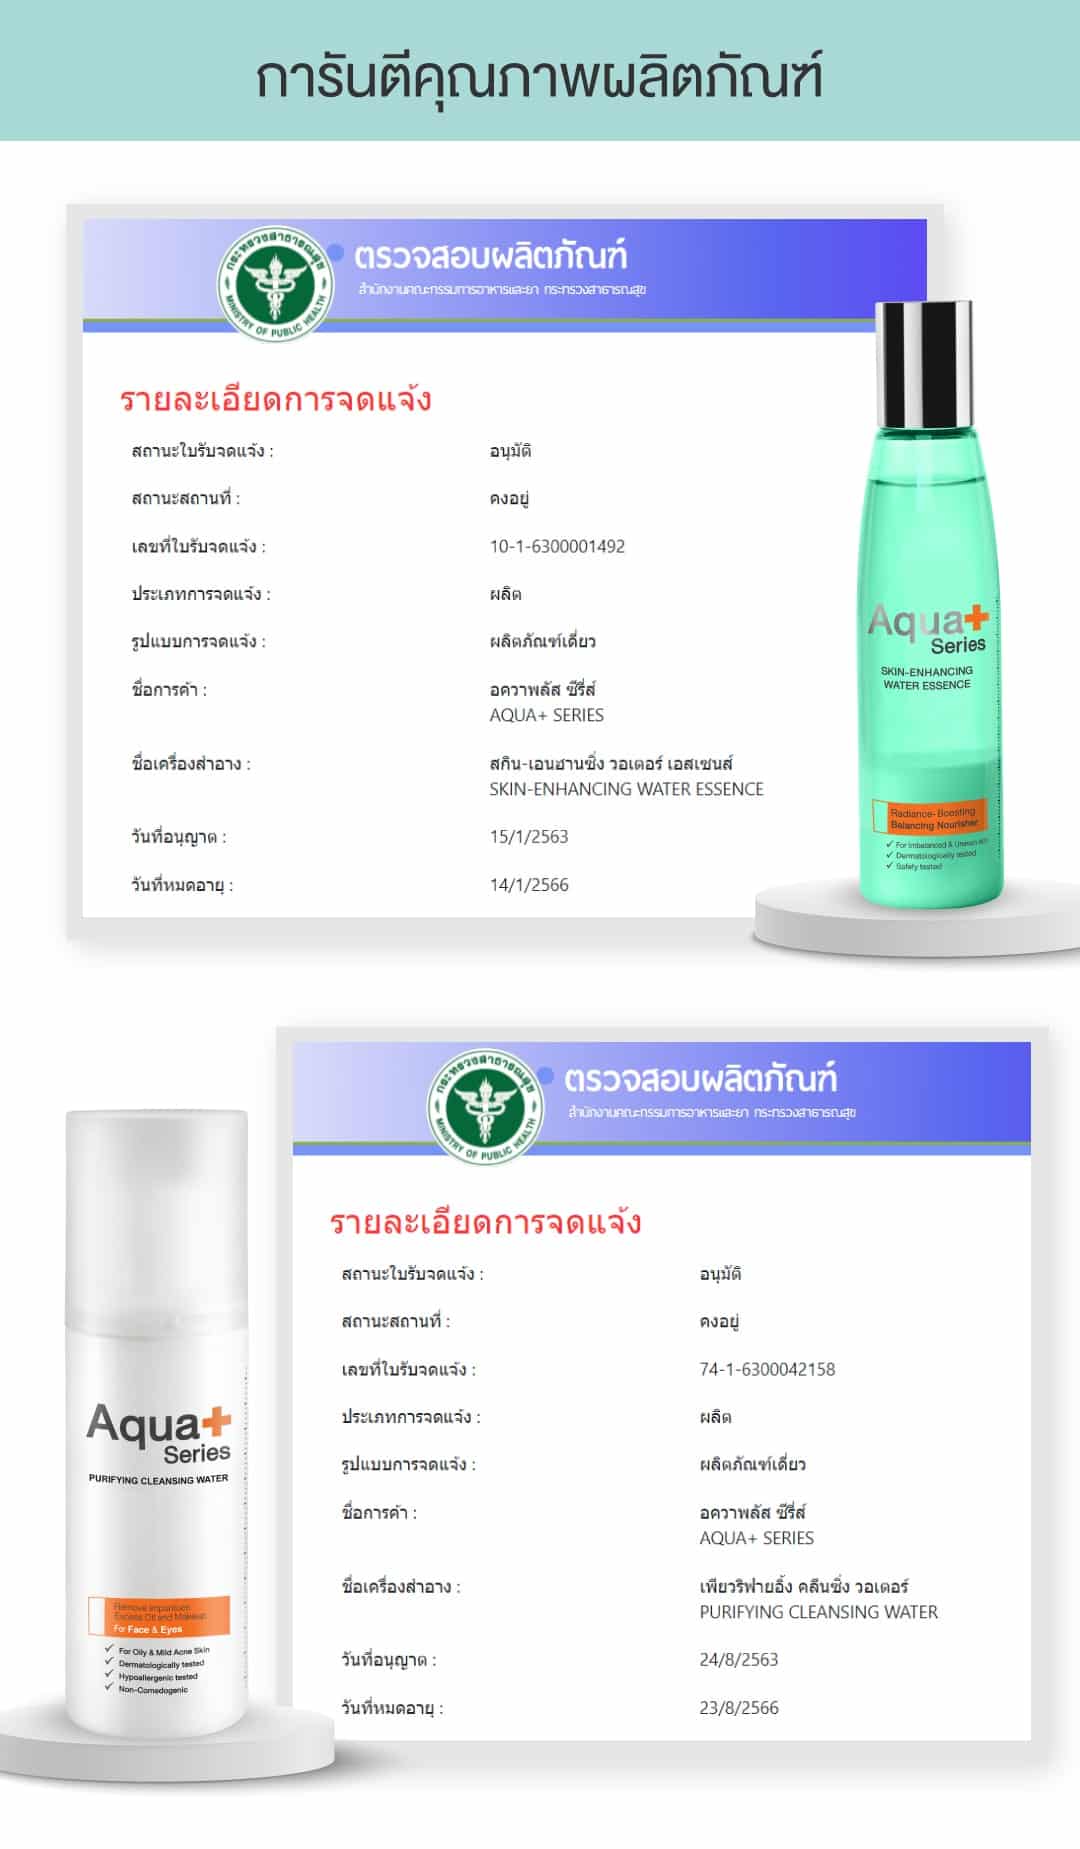 (ซื้อ 1 ฟรี 2*) Skin-Enhancing Water Essence 140 ml. (รับฟรี Purifying Cleansing Water 150 ml. และ Ultra-Fine Hydration Pads)